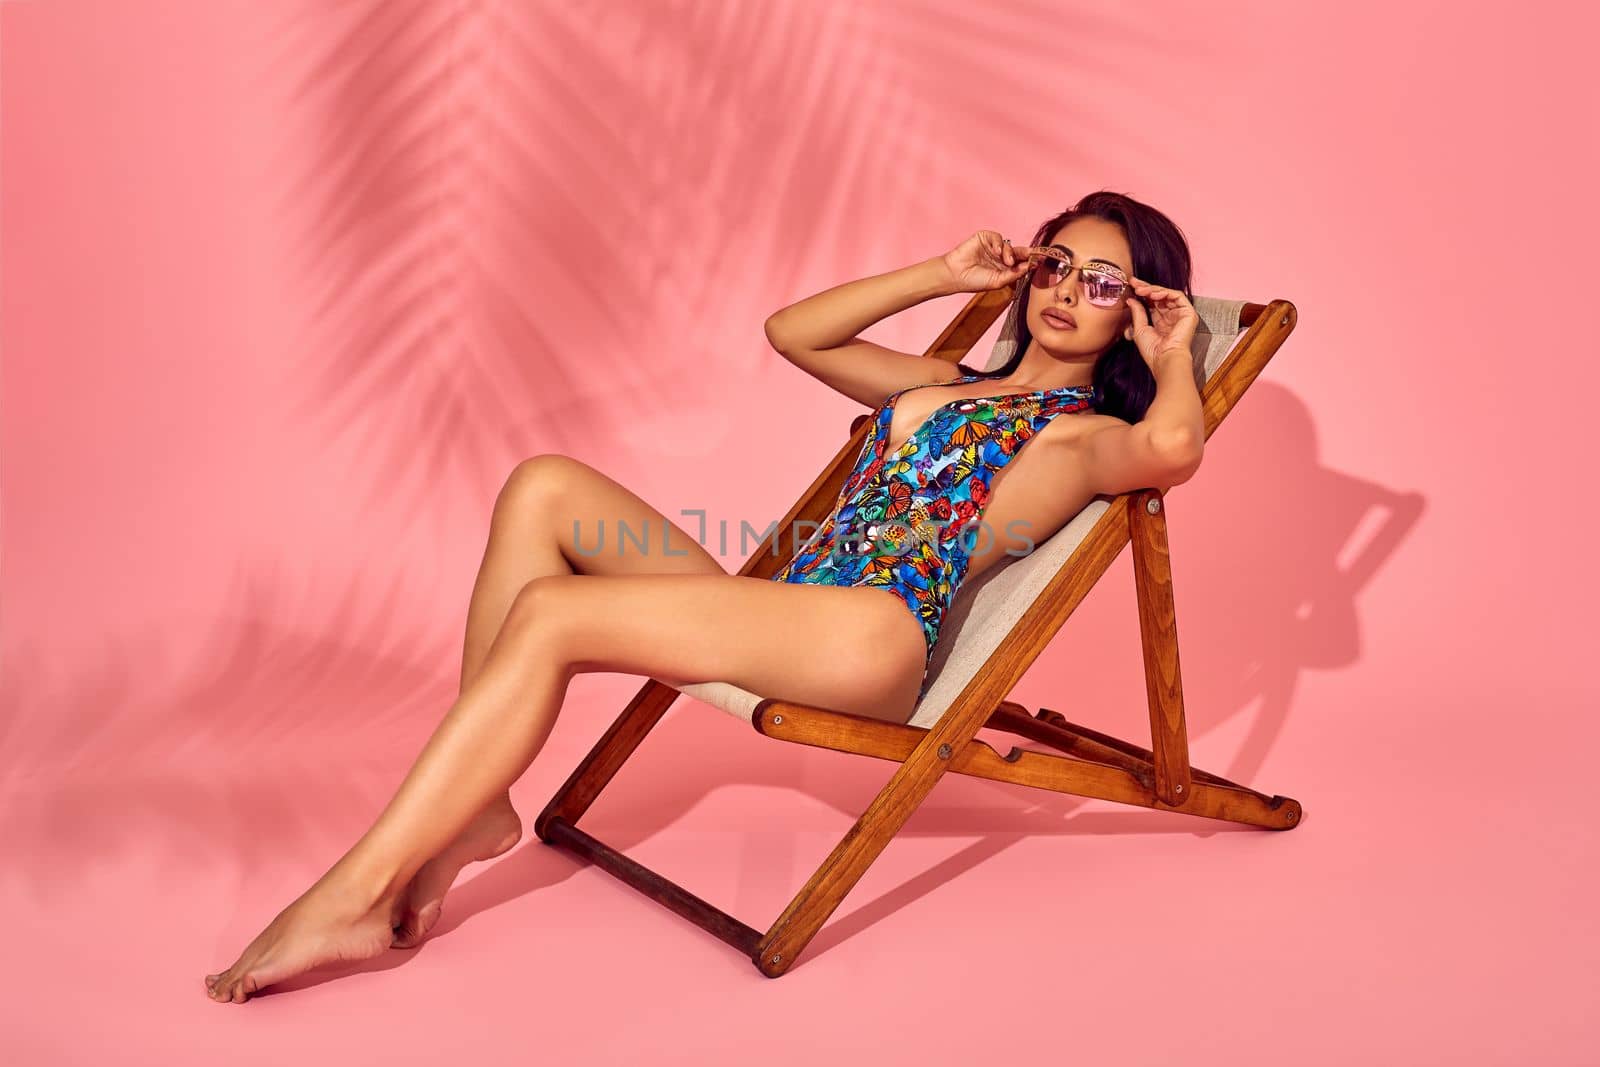 Summer lifestyle fashion portrait of young stunning woman on a lounge chair, pink background, studio shot. Wearing stylish sunglasses, bikini. by nazarovsergey